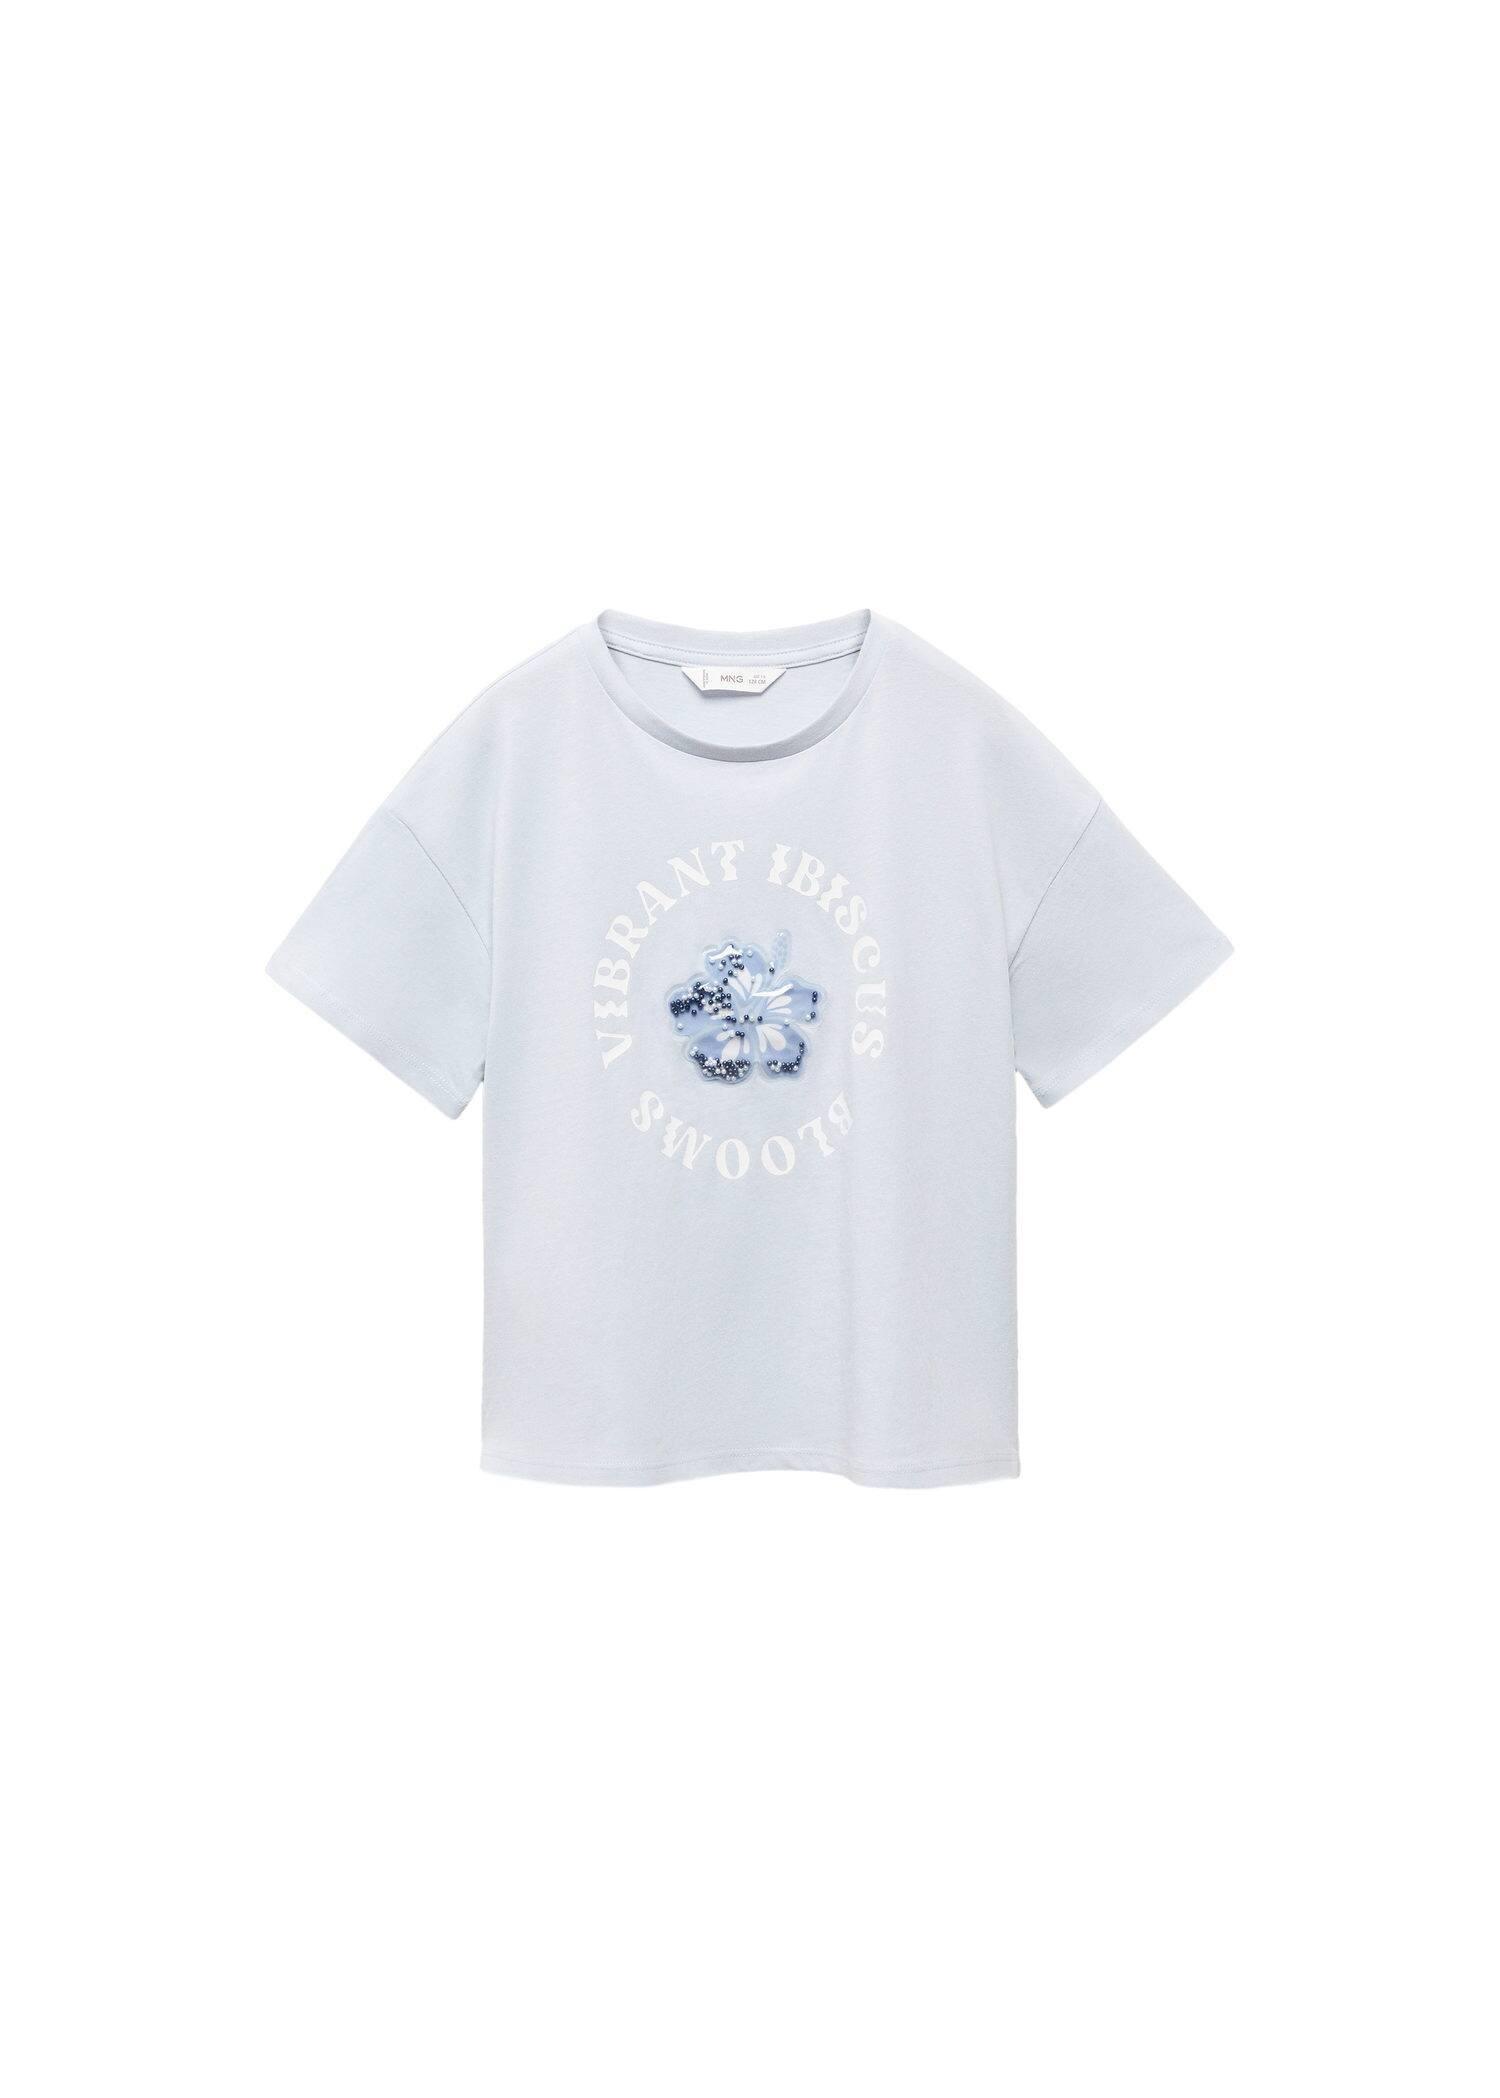 Mango - Blue Embossed Printed T-Shirt, Kids Girls